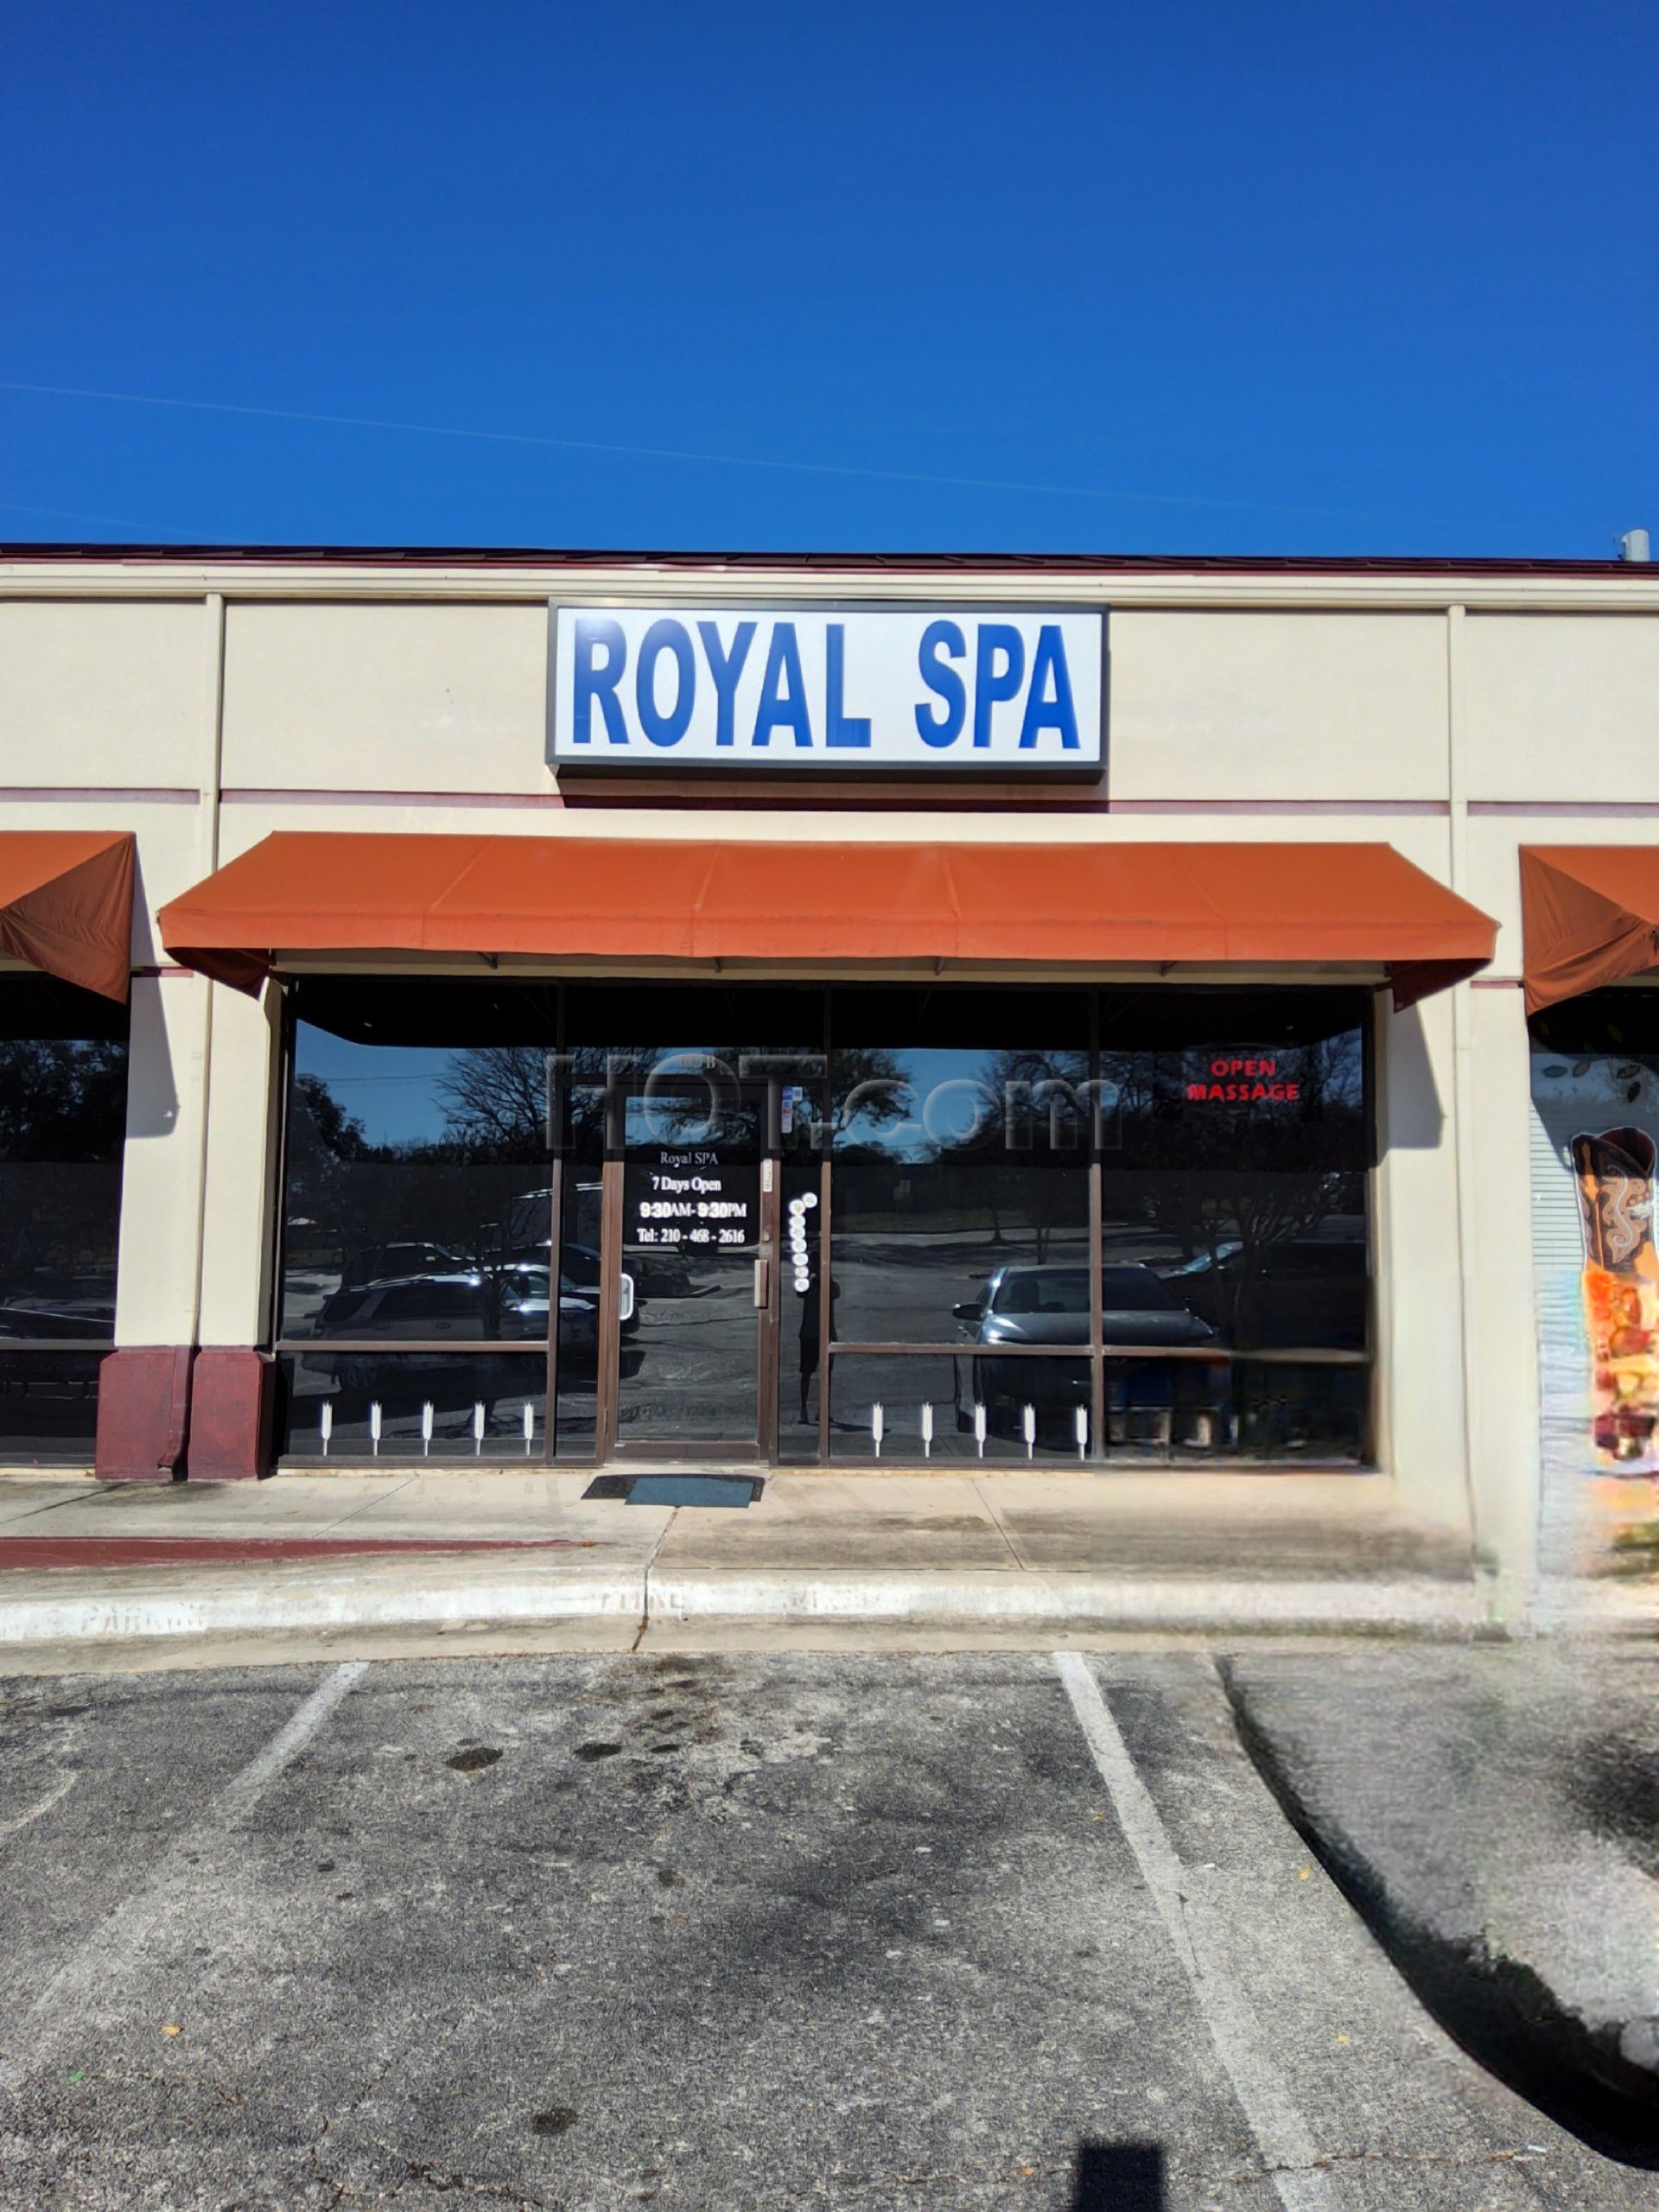 San Antonio, Texas Royal Spa